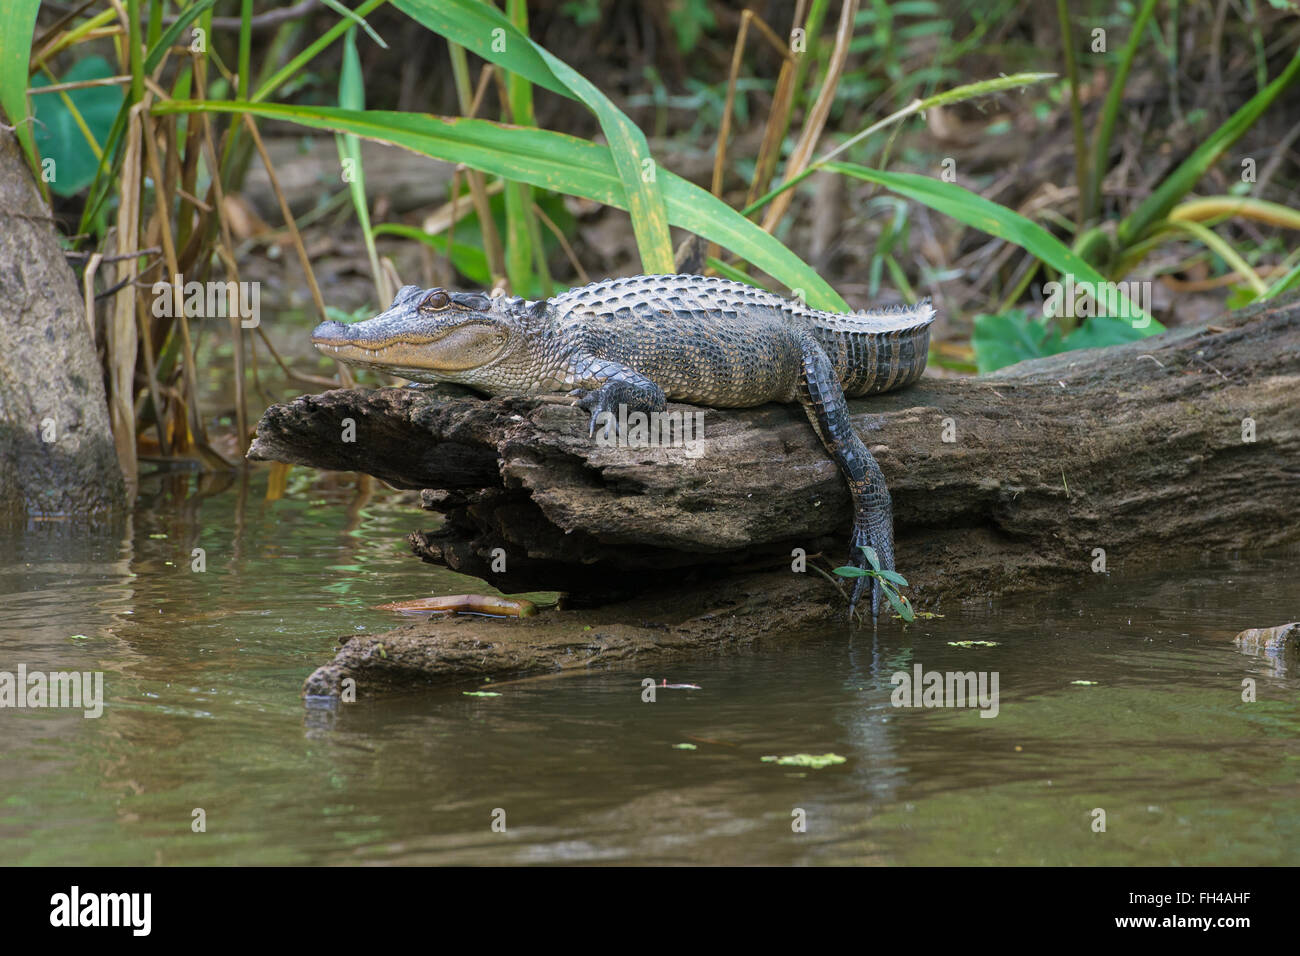 Alligator Sunbathing on Log Stock Photo